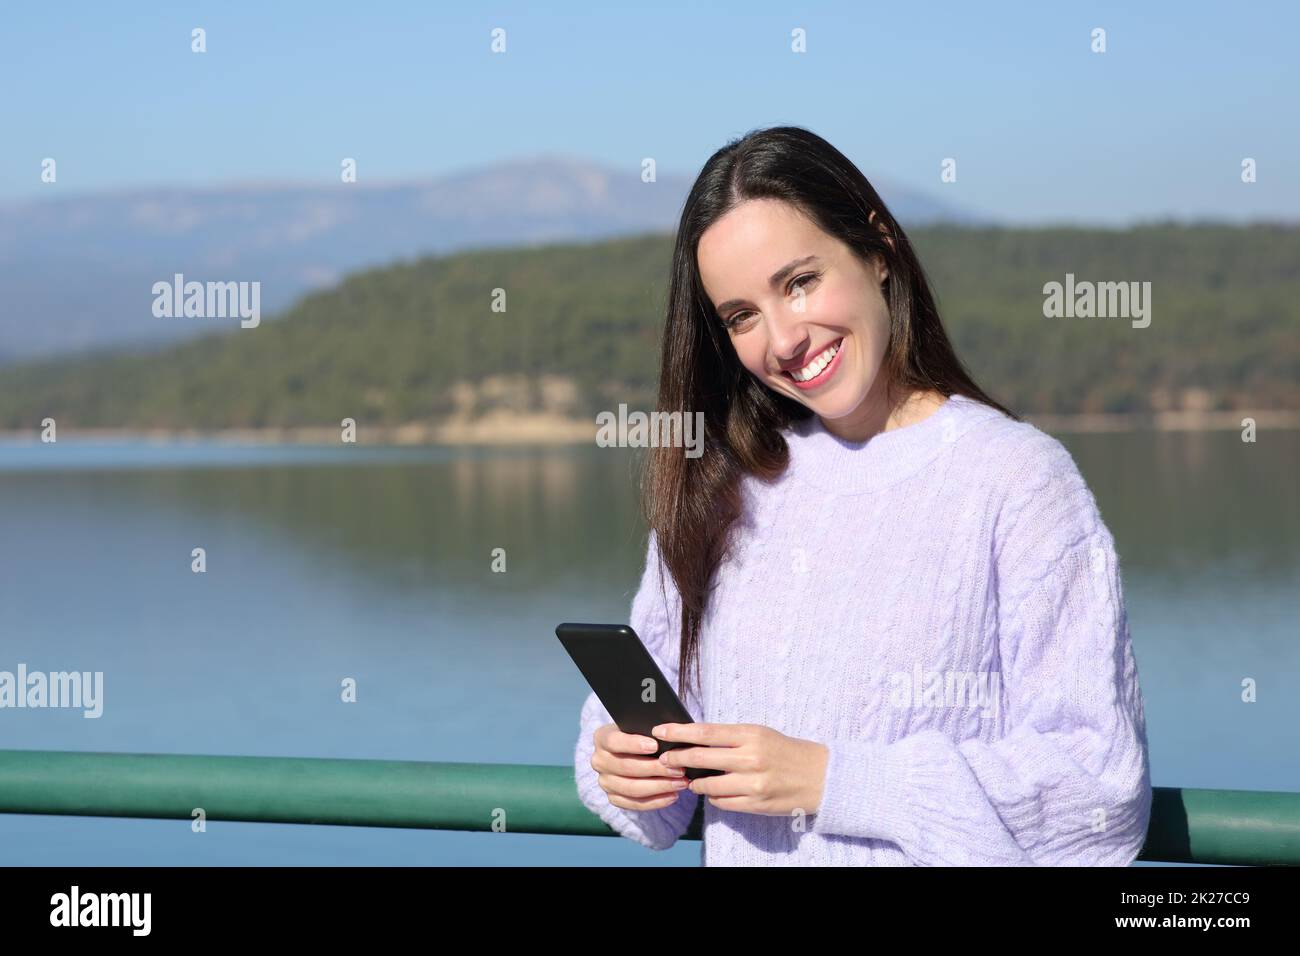 Une femme heureuse tient le téléphone et regarde l'appareil photo dans un lac Banque D'Images